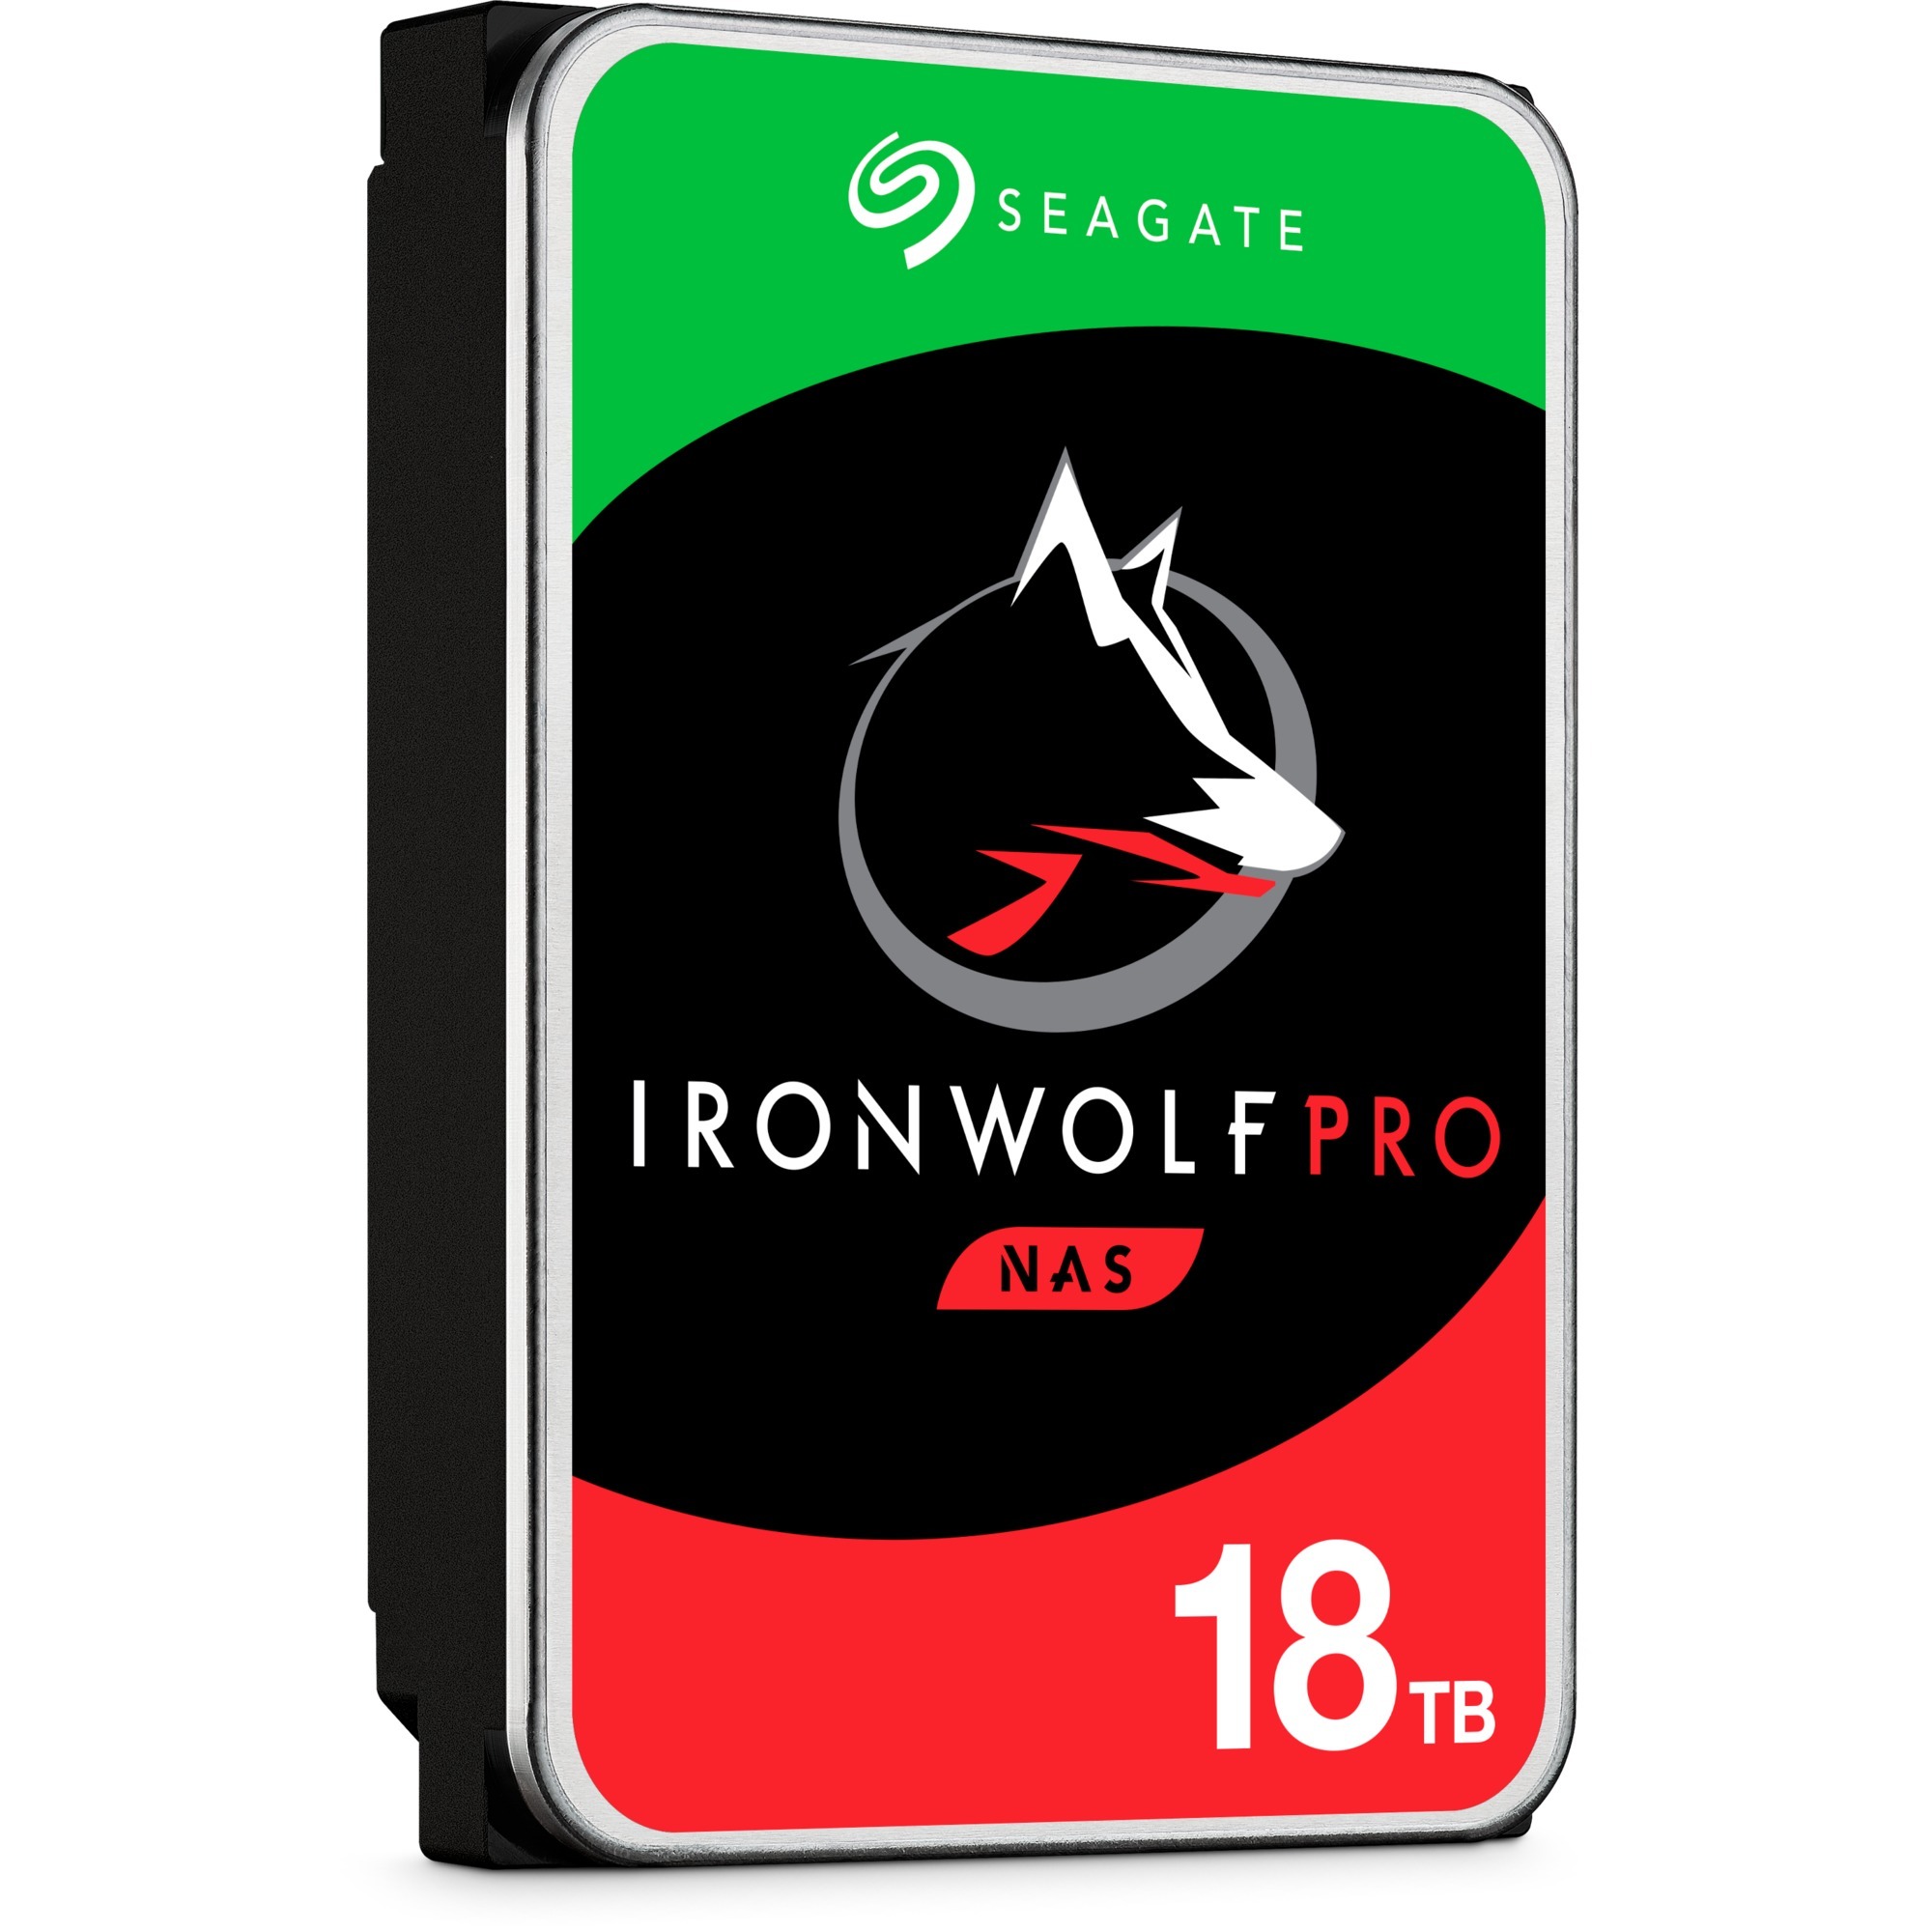 Image of Alternate - IronWolf Pro NAS 18 TB CMR, Festplatte online einkaufen bei Alternate